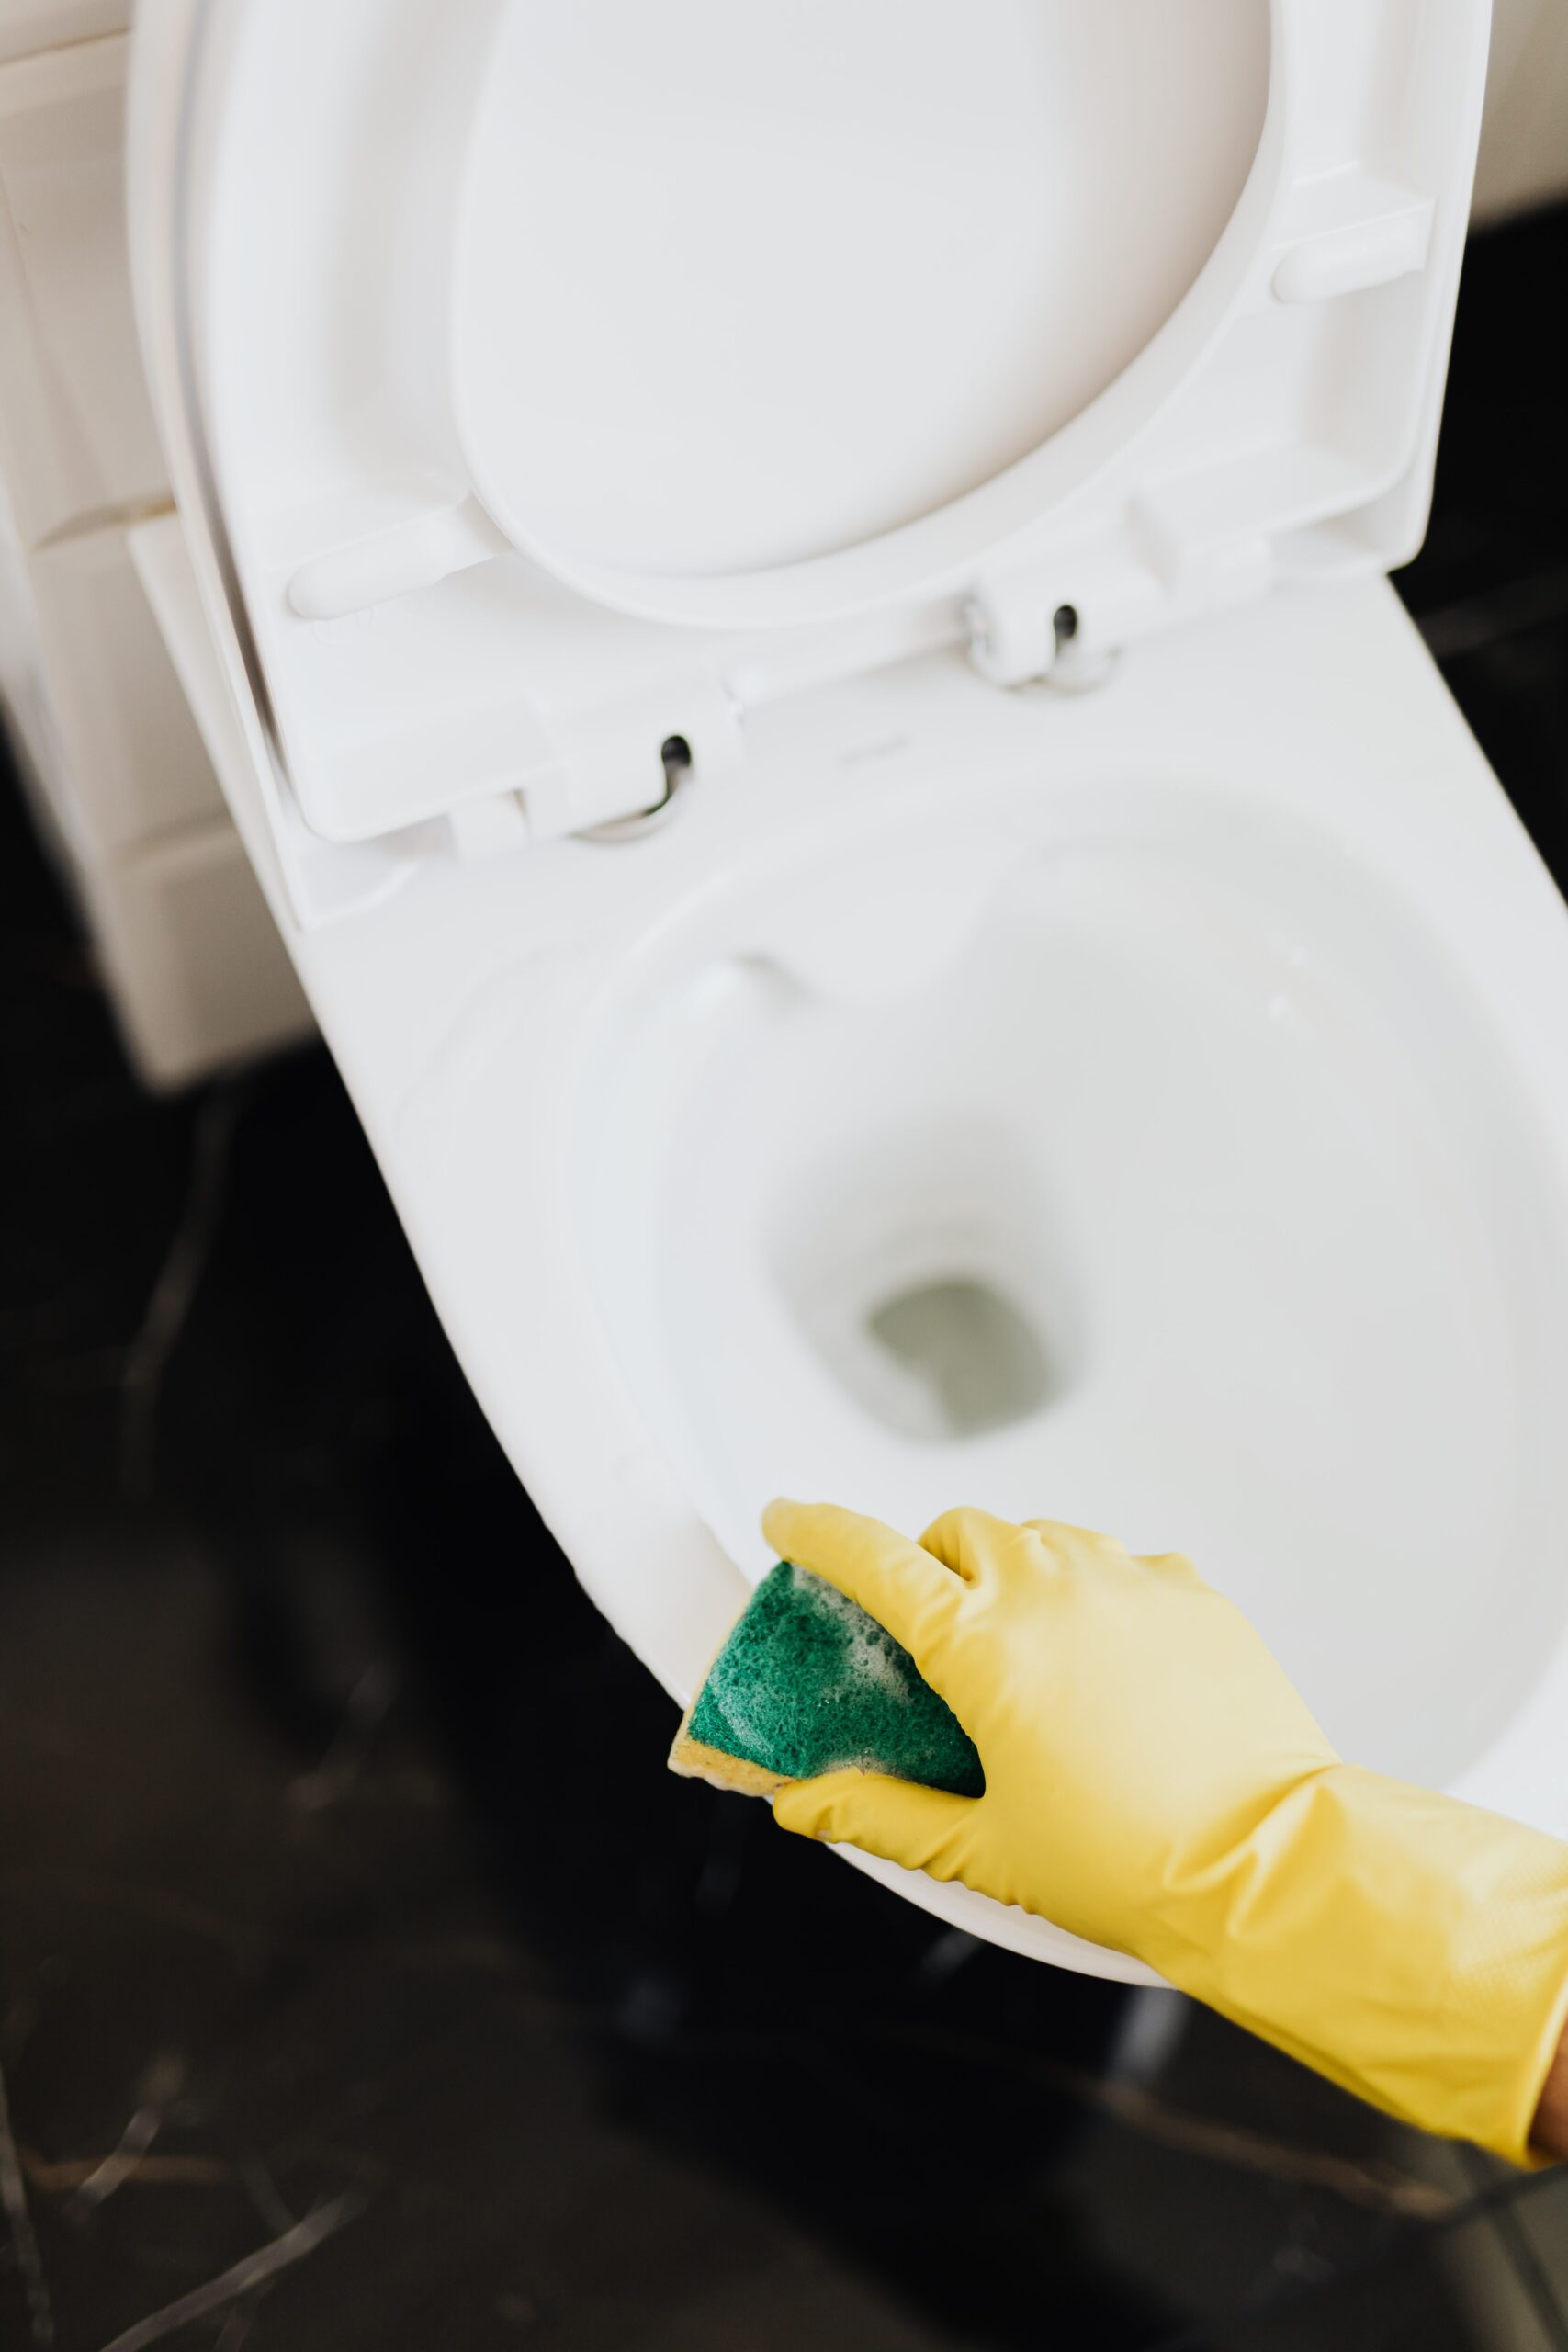 toilet drain repair dallas tx - Horizon Plumbing